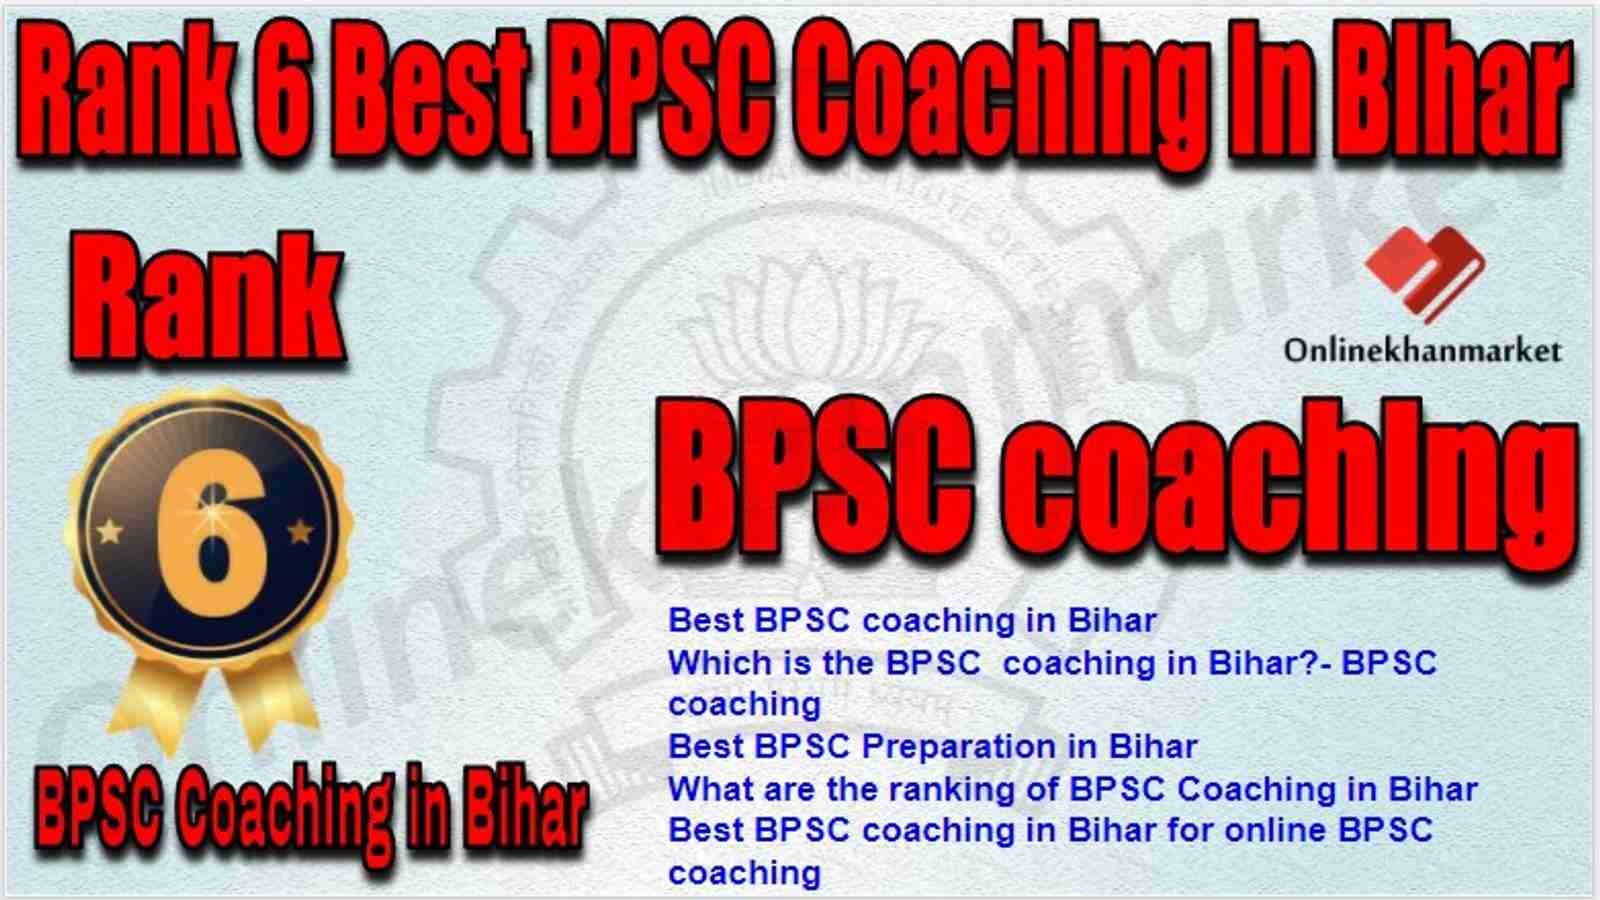 Rank 6 Best BPSC Coaching in bihar